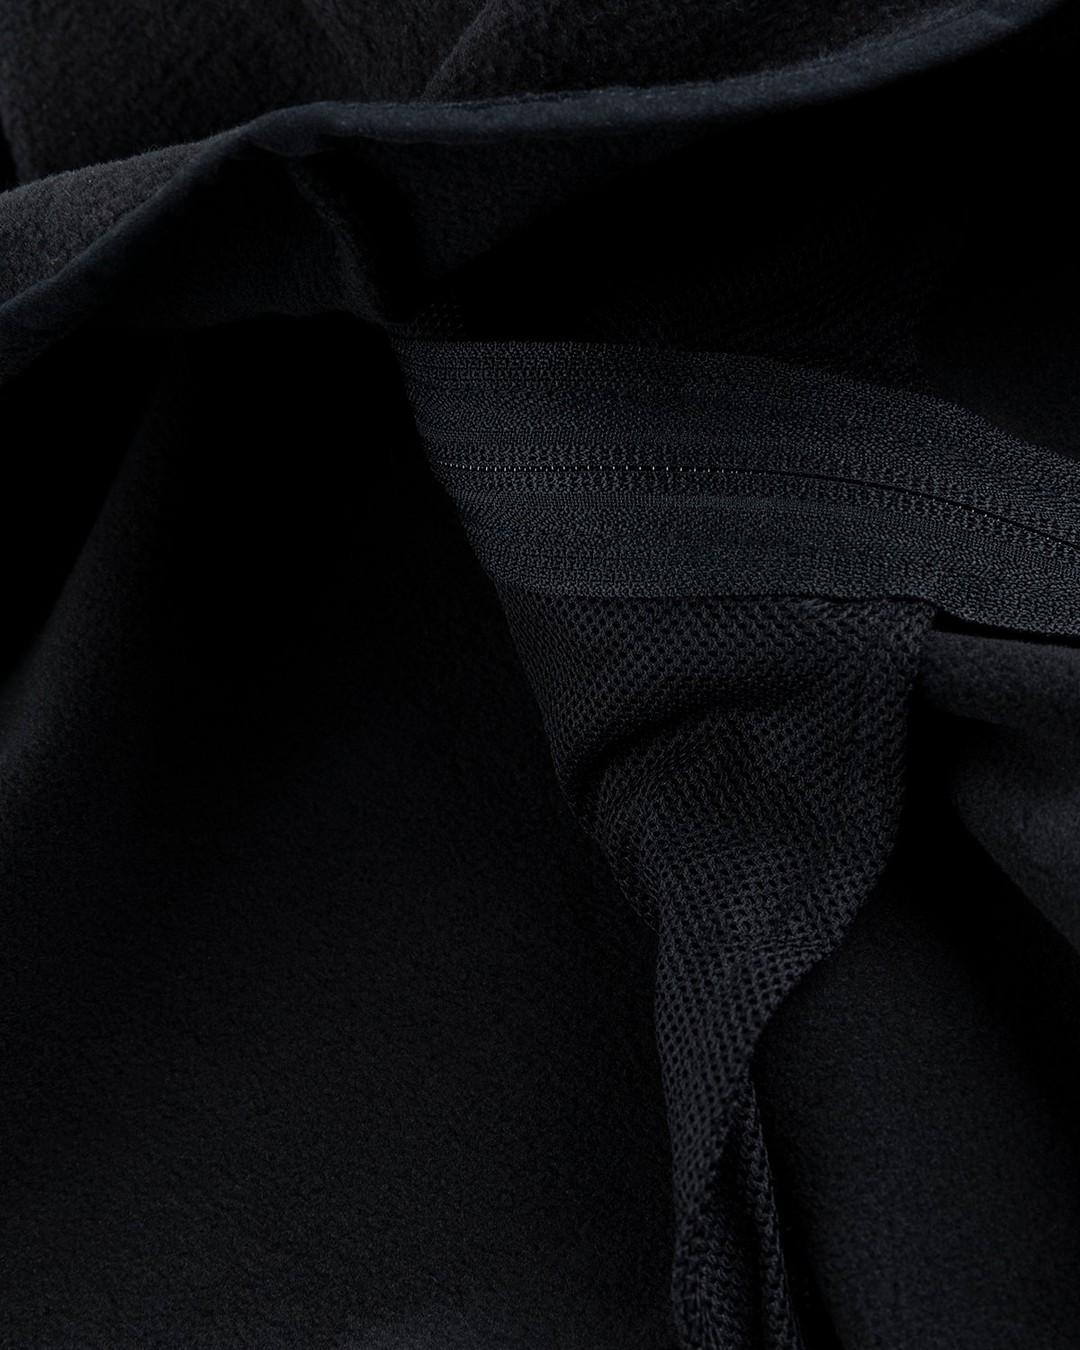 Carhartt WIP – Beaumont Jacket Black - Fleece - Black - Image 5